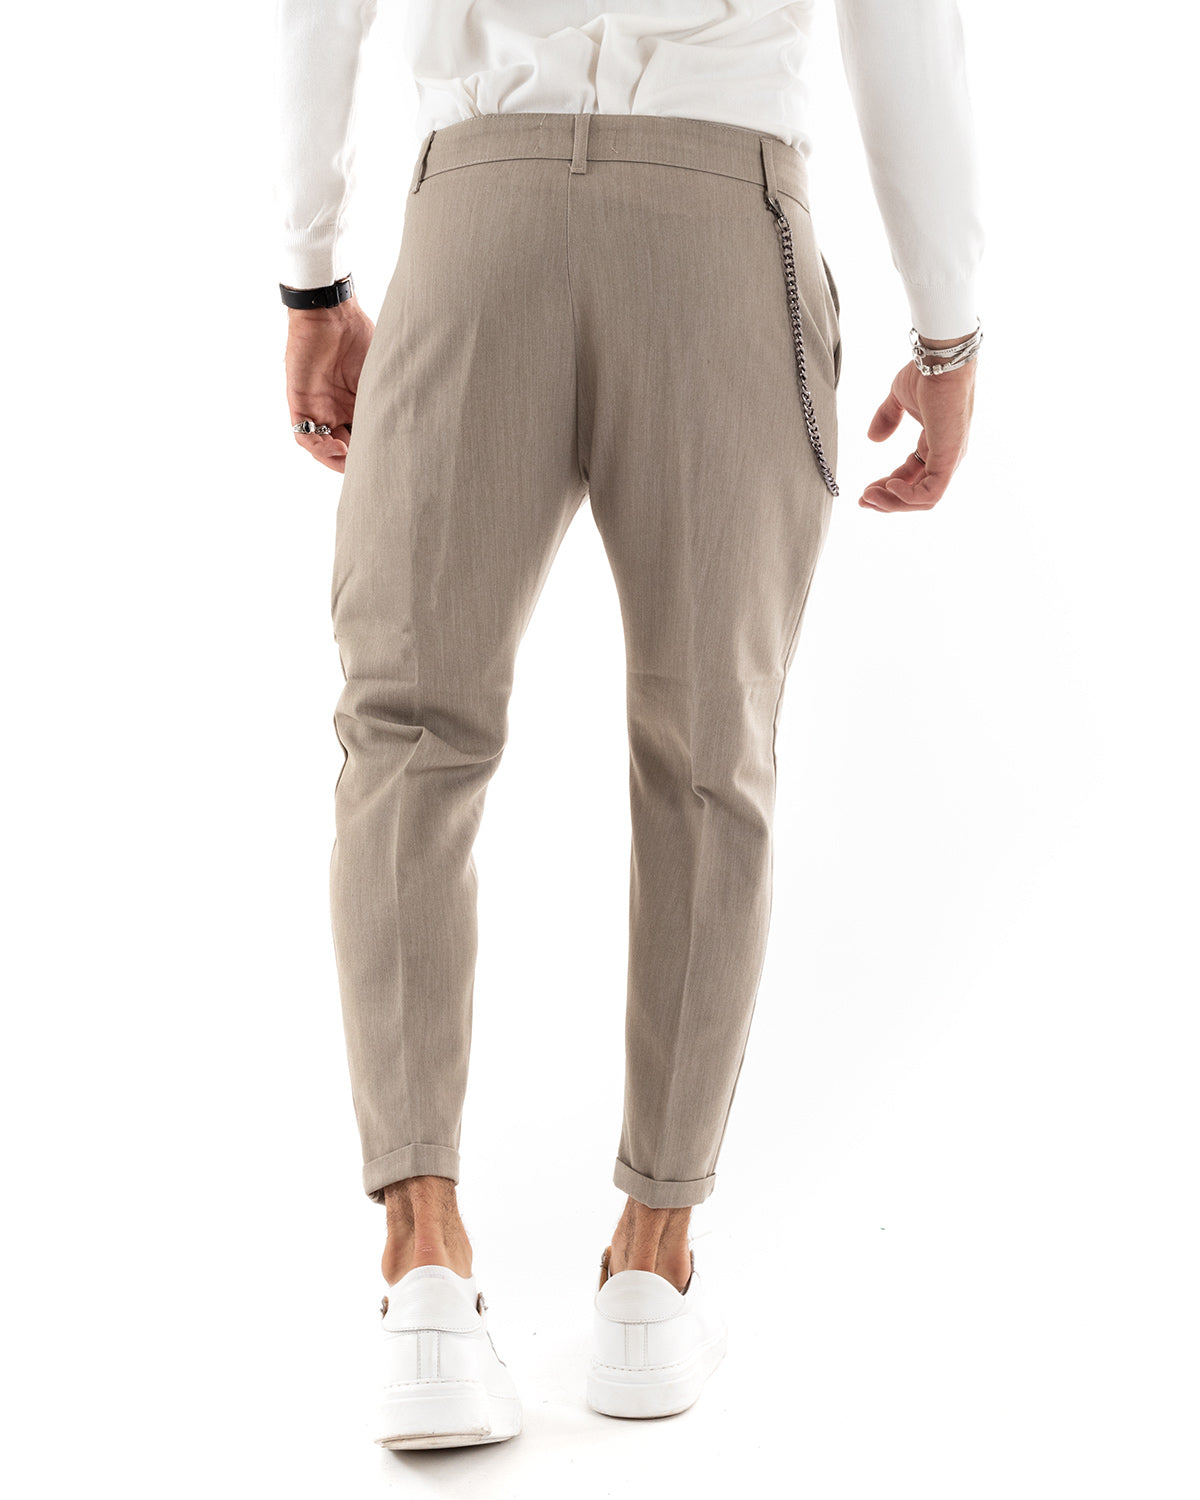 Pantaloni Uomo Viscosa Tasca America Classico Abbottonatura Allungata Casual Beige Melangiato GIOSAL-P5957A